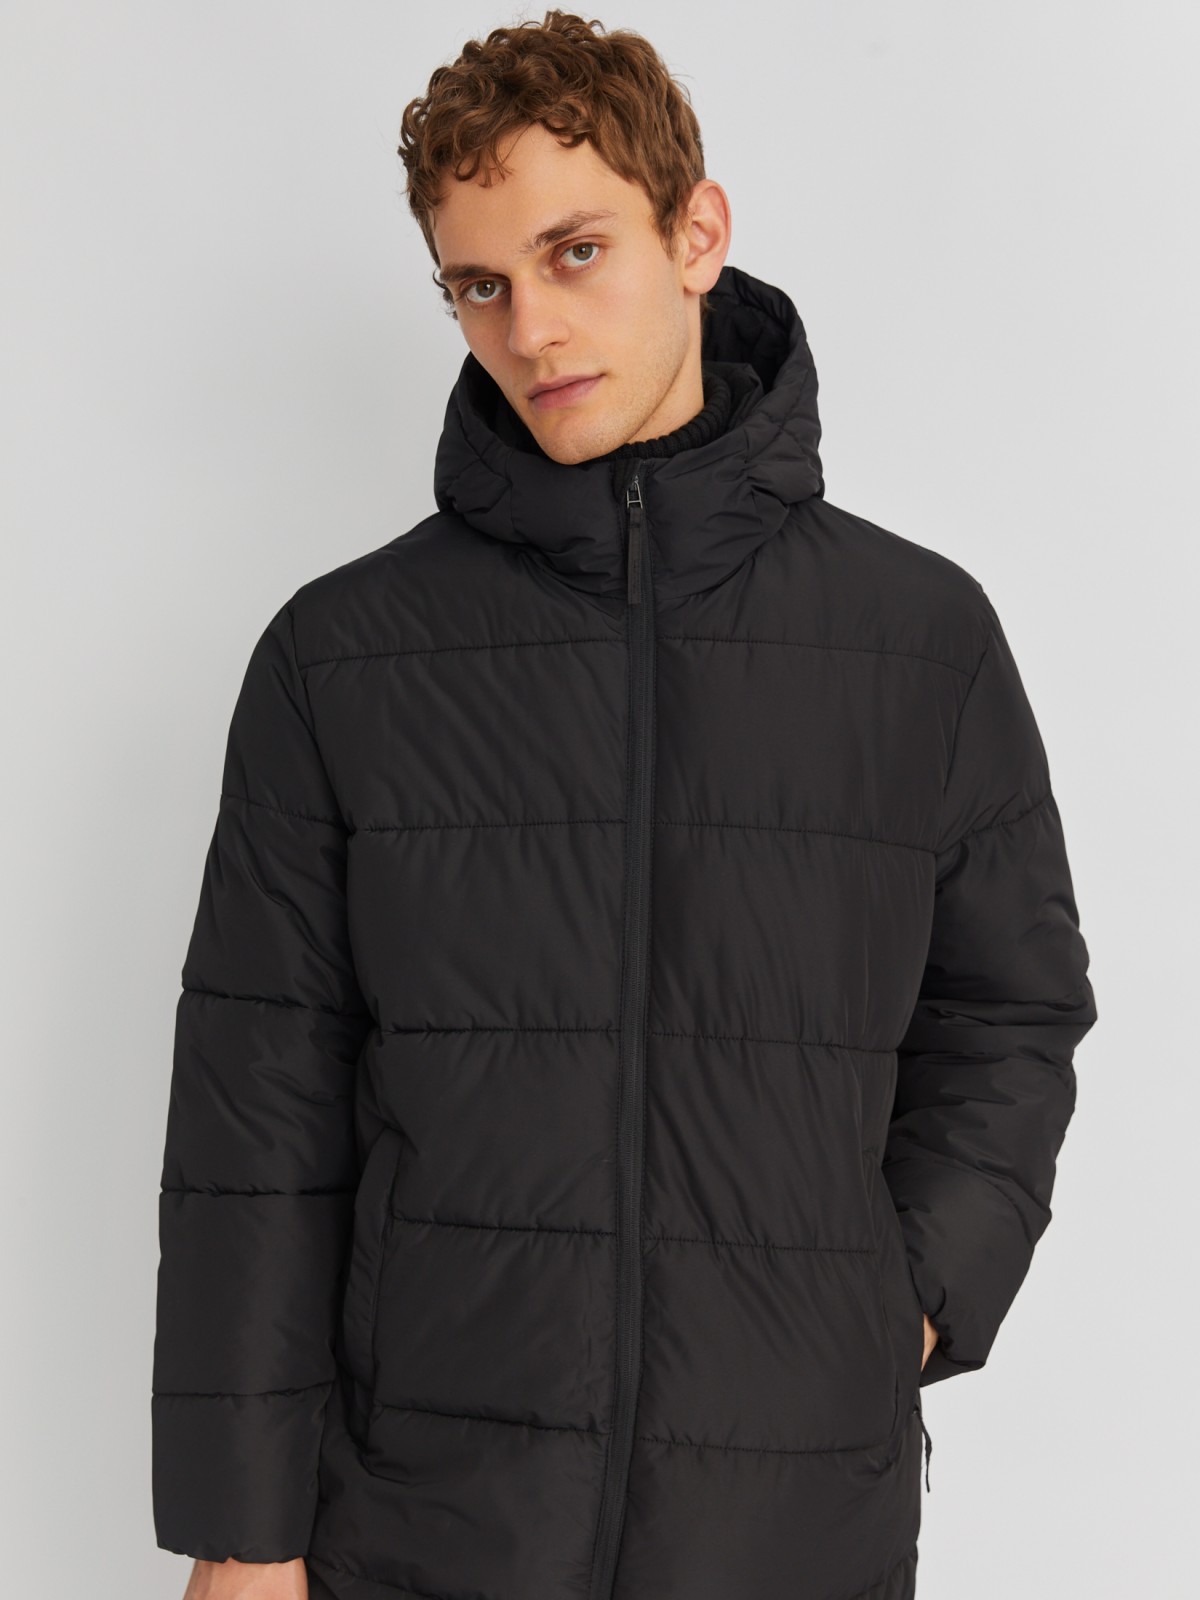 Тёплая стёганая куртка удлинённого силуэта с капюшоном zolla 01342522J064, цвет черный, размер M - фото 3